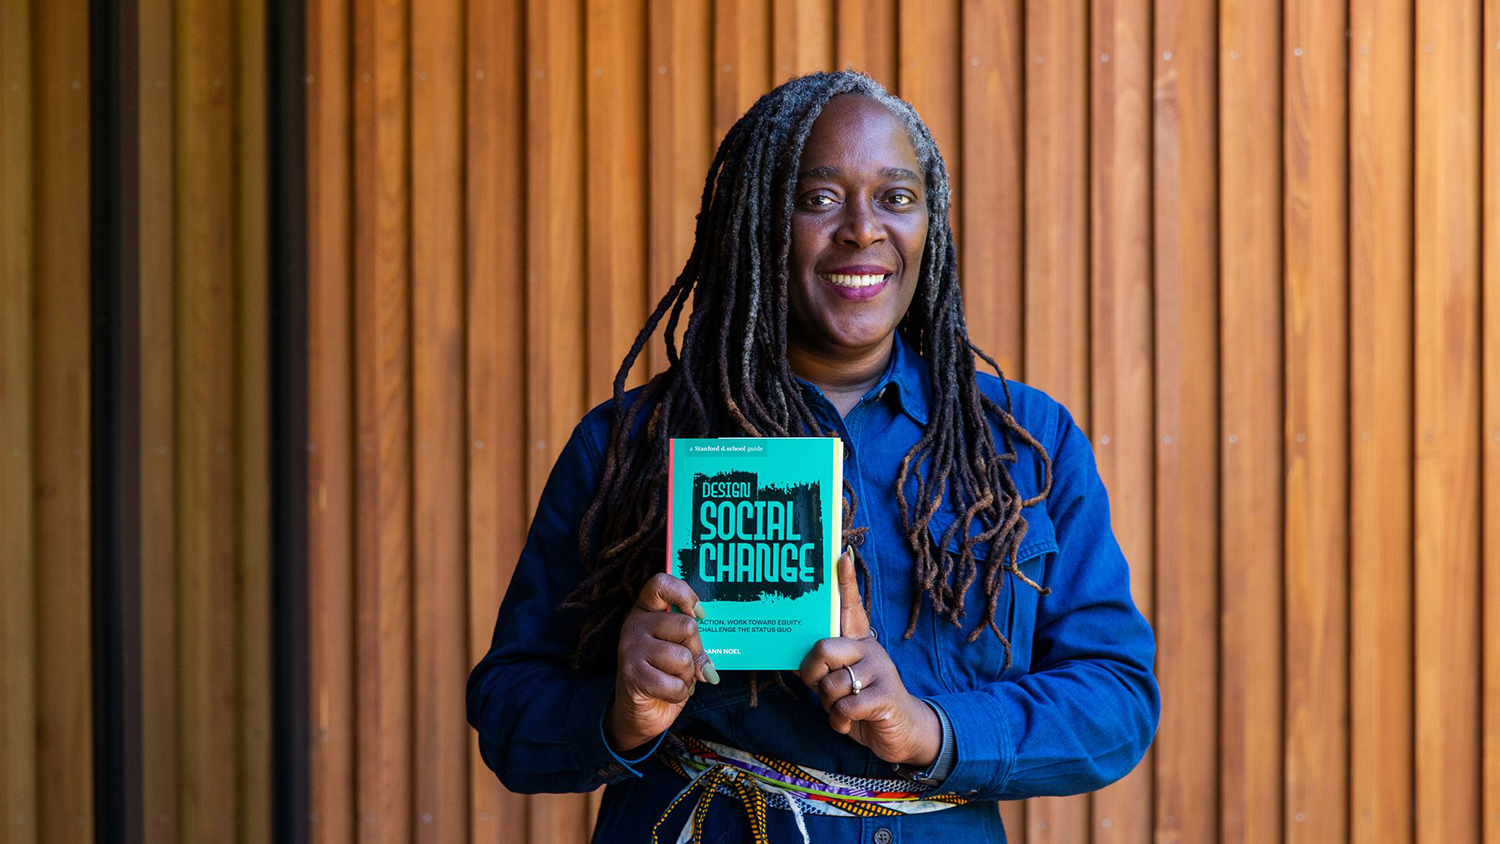 Portrait of Lesley-Ann Noel holding her recently published book, "Design Social Change."